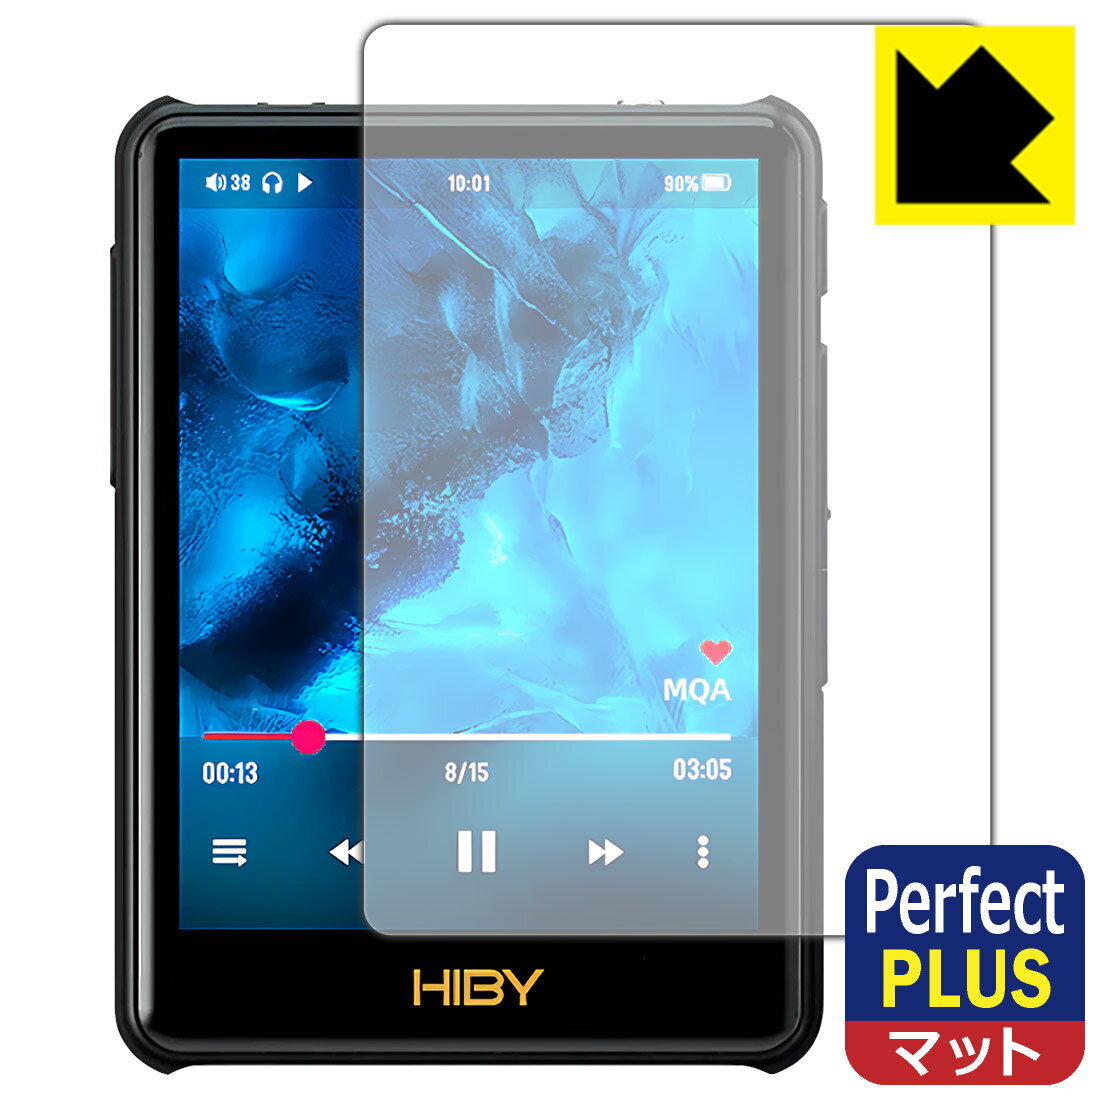 ●対応機種 : HiBy Music New R3 Pro Saber (2022)専用の商品です。●製品内容 : 表面用フィルム1枚・クリーニングワイプ1個●※この機器は周辺部が曲面となったラウンド仕様のため、保護フィルムを端まで貼ることができません。(表示部分はカバーしています)●「Perfect Shield Plus」は画面の反射を強く抑え、指のすべりもなめらかな指紋や皮脂汚れがつきにくい『アンチグレアタイプ(非光沢)の保護フィルム』●安心の国産素材を使用。日本国内の自社工場で製造し出荷しています。 ★貼り付け失敗交換サービス対象商品★【ポスト投函送料無料】商品は【ポスト投函発送 (追跡可能メール便)】で発送します。お急ぎ、配達日時を指定されたい方は以下のクーポンを同時購入ください。【お急ぎ便クーポン】　プラス110円(税込)で速達扱いでの発送。お届けはポストへの投函となります。【配達日時指定クーポン】　プラス550円(税込)で配達日時を指定し、宅配便で発送させていただきます。【お急ぎ便クーポン】はこちらをクリック【配達日時指定クーポン】はこちらをクリック 　 表面に微細な凹凸を作ることにより、外光を乱反射させギラツキを抑える「アンチグレア加工」がされております。 屋外での太陽光の映り込み、屋内でも蛍光灯などの映り込みが気になるシーンが多い方におすすめです。 また、指紋がついた場合でも目立ちにくいという特長があります。 【Perfect Shield Plus】は、従来の製品【Perfect Shield】よりも反射低減(アンチグレア)効果が強いフィルムです。映り込み防止を一番に優先する方におすすめです。(反射低減効果が強いため、表示画面との相性により色のにじみ・モアレ等が発生する場合があります) 指滑りはさらさらな使用感でストレスのない操作・入力が可能です。 ハードコート加工がされており、キズや擦れに強くなっています。簡単にキズがつかず長くご利用いただけます。 反射防止のアンチグレア加工で指紋が目立ちにくい上、表面は防汚コーティングがされており、皮脂や汚れがつきにくく、また、落ちやすくなっています。(【Perfect Shield】よりも指紋は目立ちません) 接着面は気泡の入りにくい特殊な自己吸着タイプです。素材に柔軟性があり、貼り付け作業も簡単にできます。また、はがすときにガラス製フィルムのように割れてしまうことはありません。 貼り直しが何度でもできるので、正しい位置へ貼り付けられるまでやり直すことができます。 高級グレードの国産素材を日本国内の弊社工場で加工している完全な Made in Japan です。安心の品質をお届けします。 使用上の注意 ●本製品は機器の画面をキズなどから保護するフィルムです。他の目的にはご使用にならないでください。 ●本製品は液晶保護および機器本体を完全に保護することを保証するものではありません。機器の破損、損傷、故障、その他損害につきましては一切の責任を負いかねます。 ●製品の性質上、画面操作の反応が変化したり、表示等が変化して見える場合がございます。 ●貼り付け作業時の失敗(位置ズレ、汚れ、ゆがみ、折れ、気泡など)および取り外し作業時の破損、損傷などについては、一切の責任を負いかねます。 ●水に濡れた状態でのご使用は吸着力の低下などにより、保護フィルムがはがれてしまう場合がございます。防水対応の機器でご使用の場合はご注意ください。 ●アルコール類やその他薬剤を本製品に付着させないでください。表面のコーティングや吸着面が変質するおそれがあります。 ●品質向上のため、仕様などを予告なく変更する場合がございますので、予めご了承ください。 ・注意事項：モニターの発色具合により色合いが異なる場合がございます。